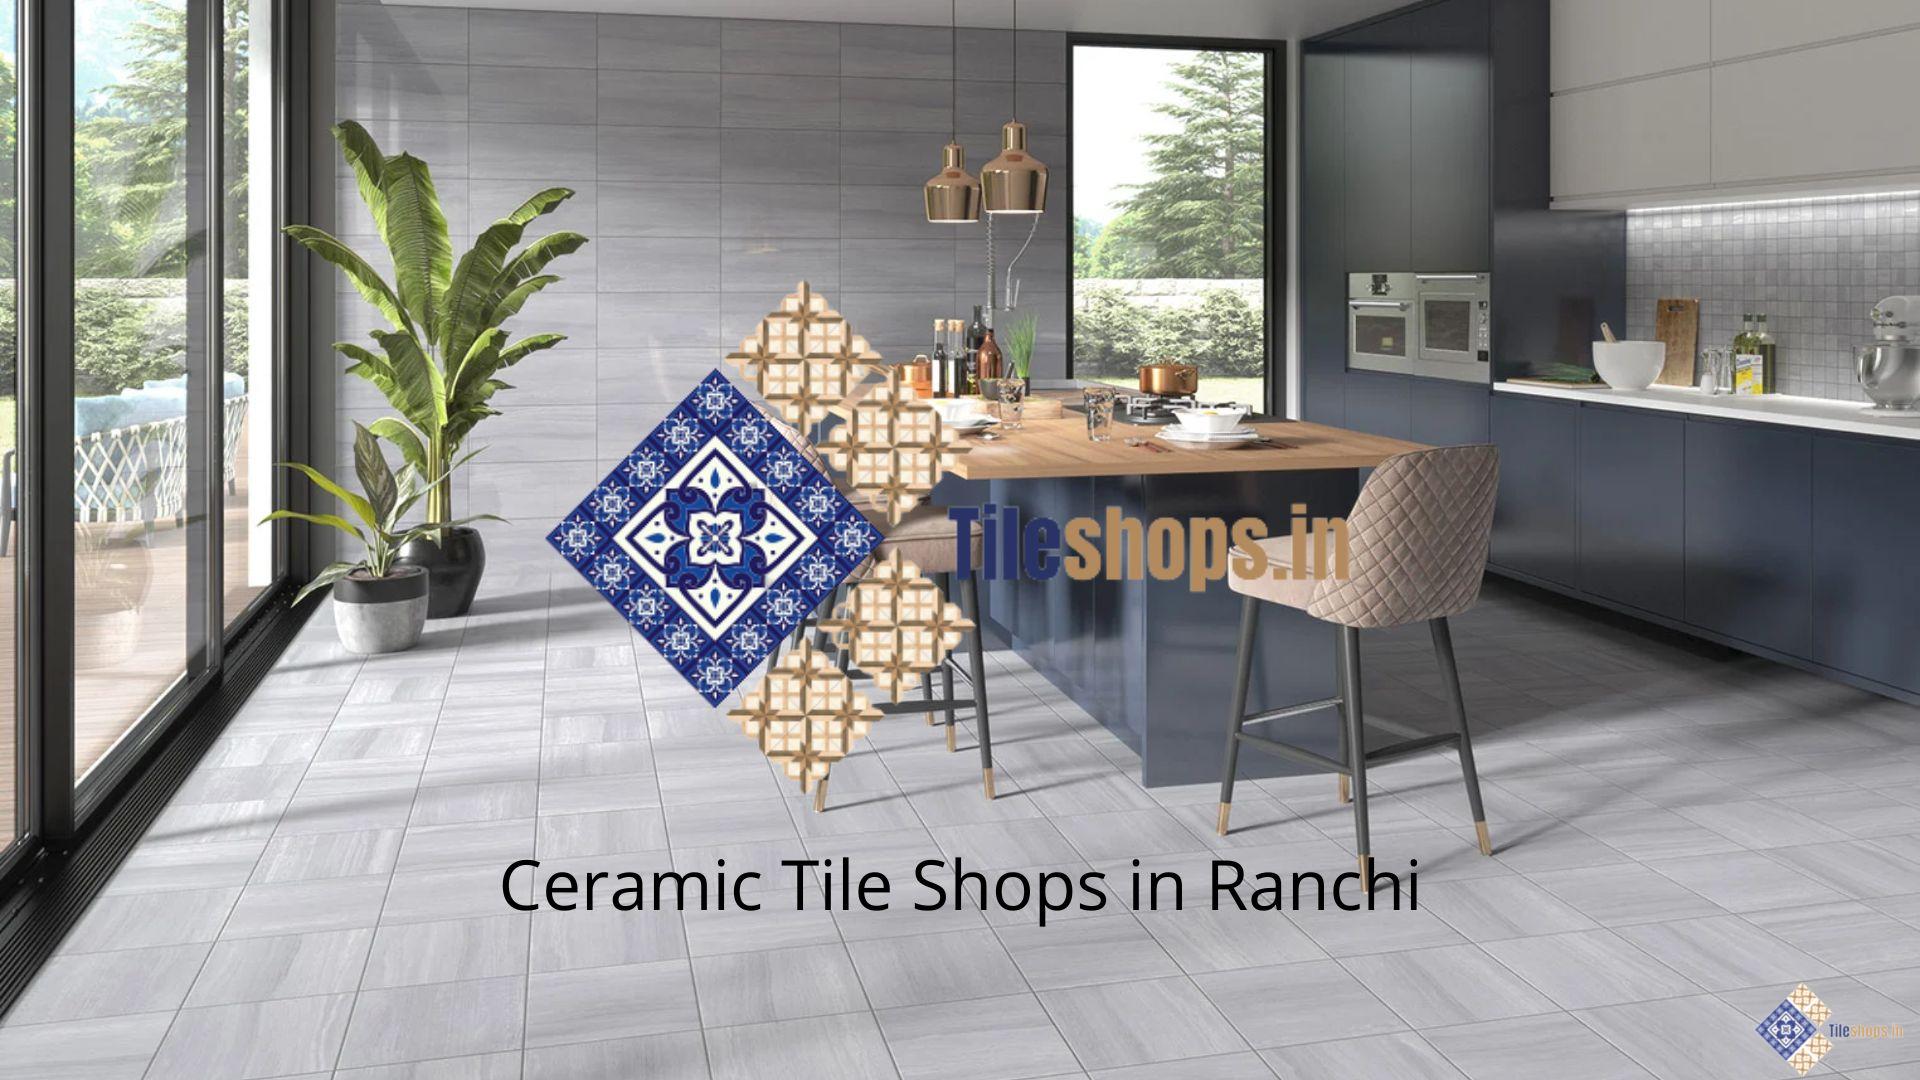 Ceramic Tile Shops in Ranchi